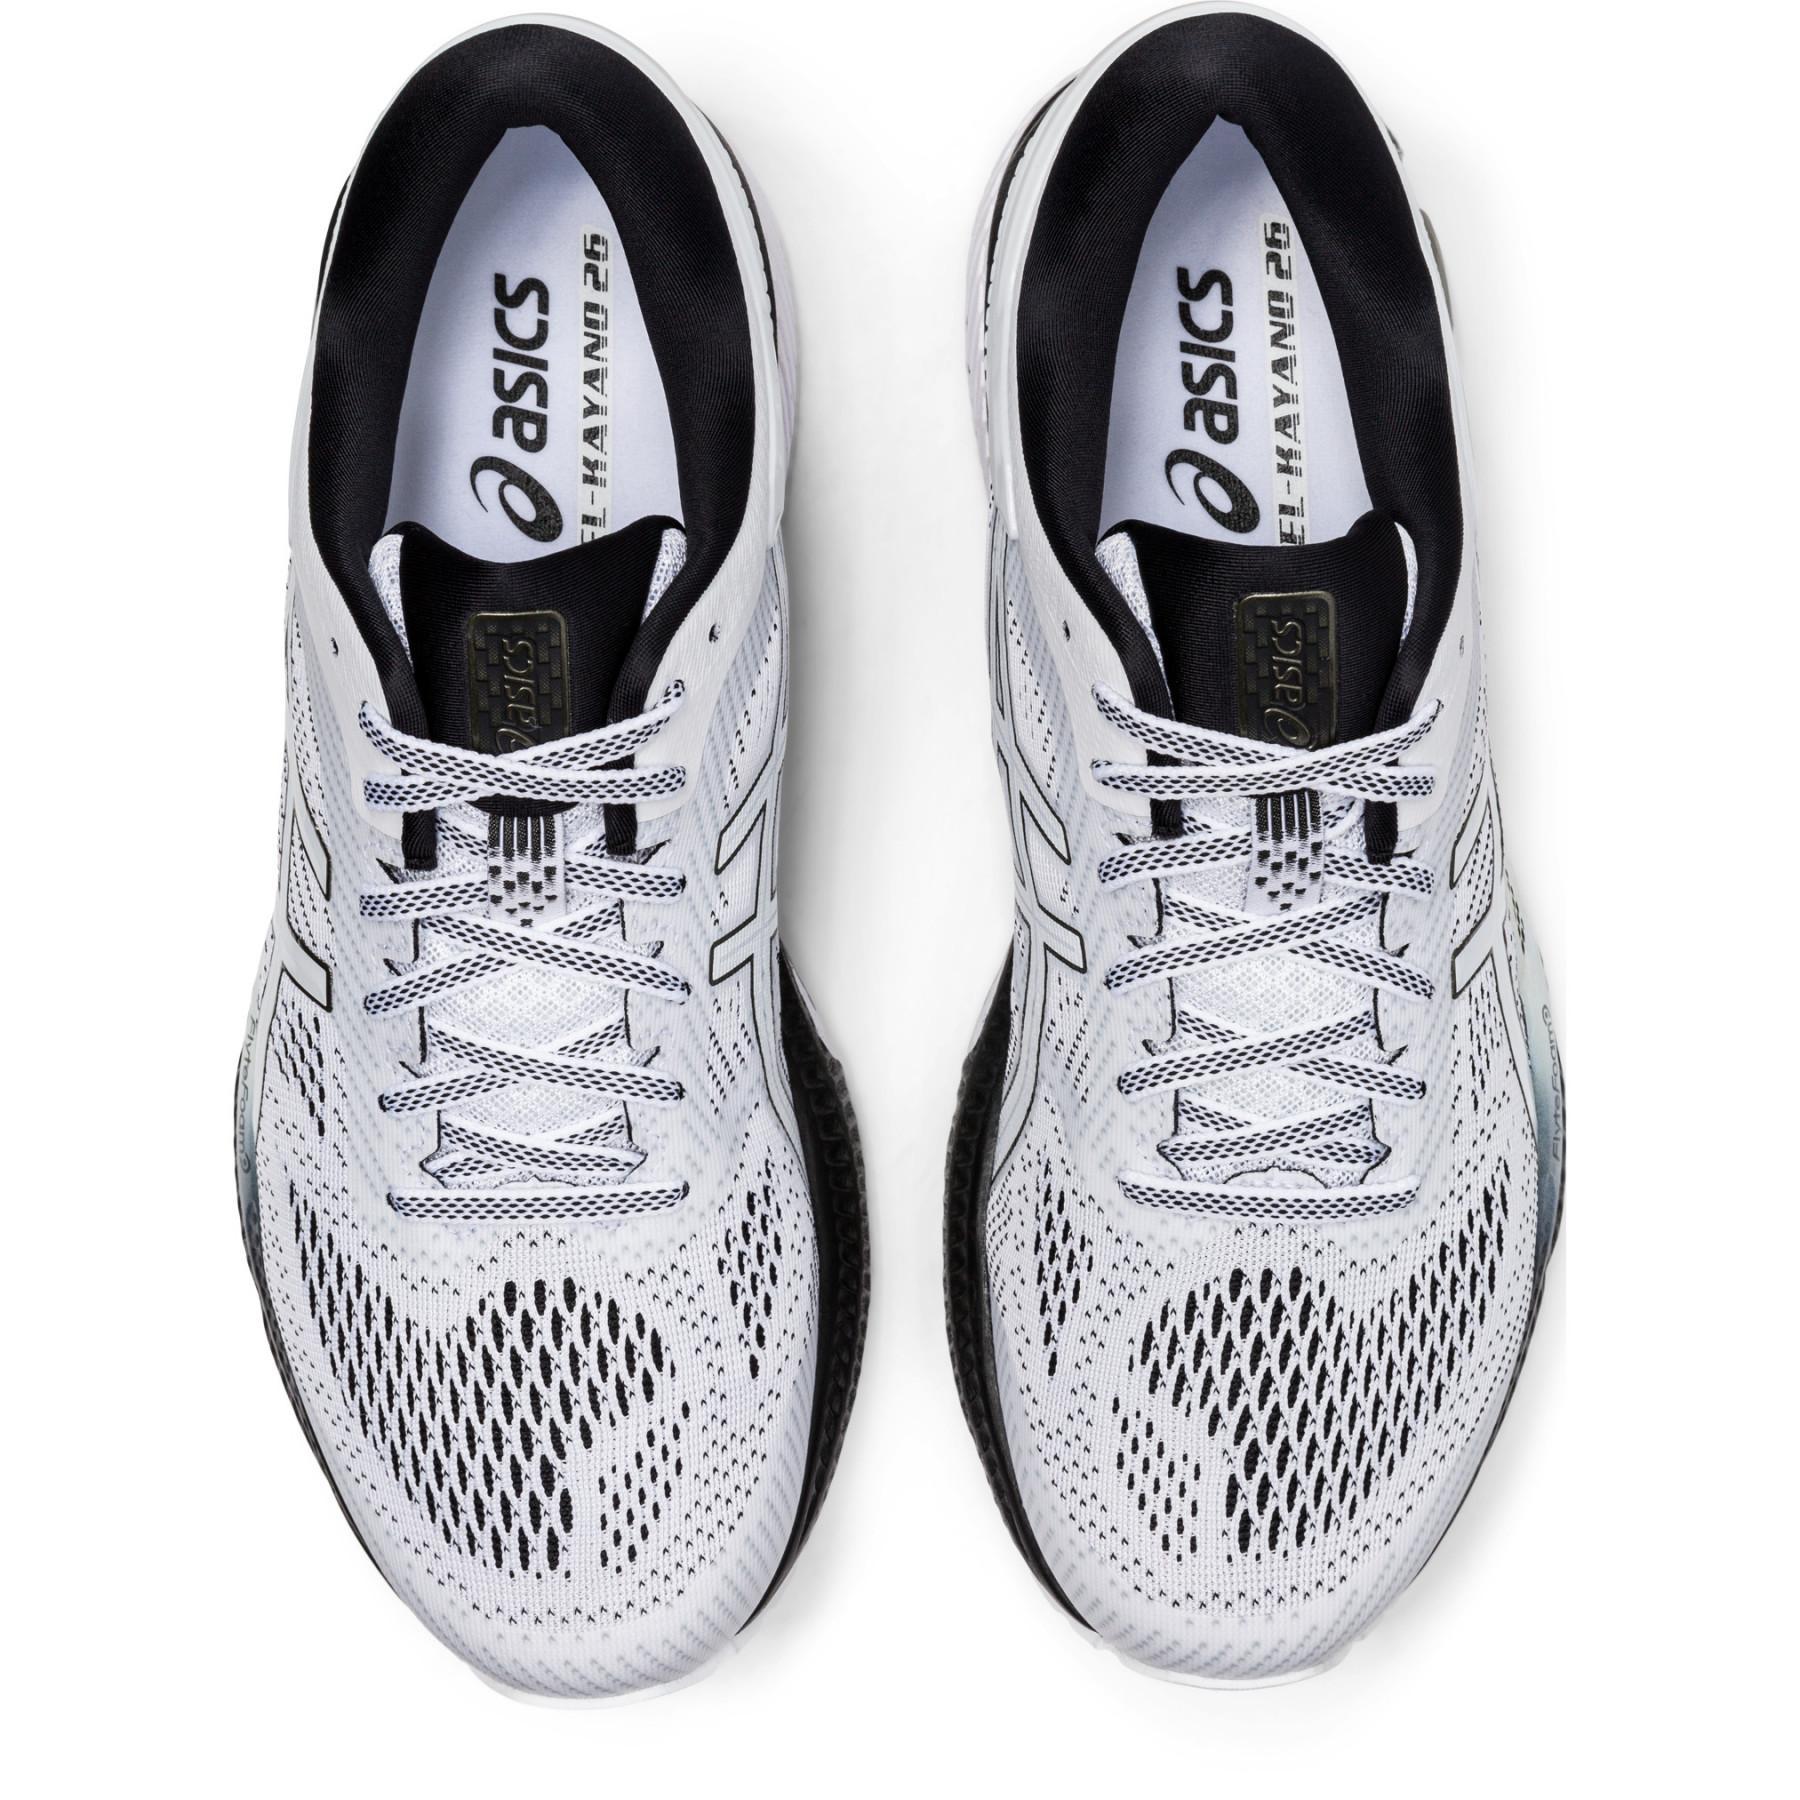 Chaussures de running Asics Gel-Kayano 26